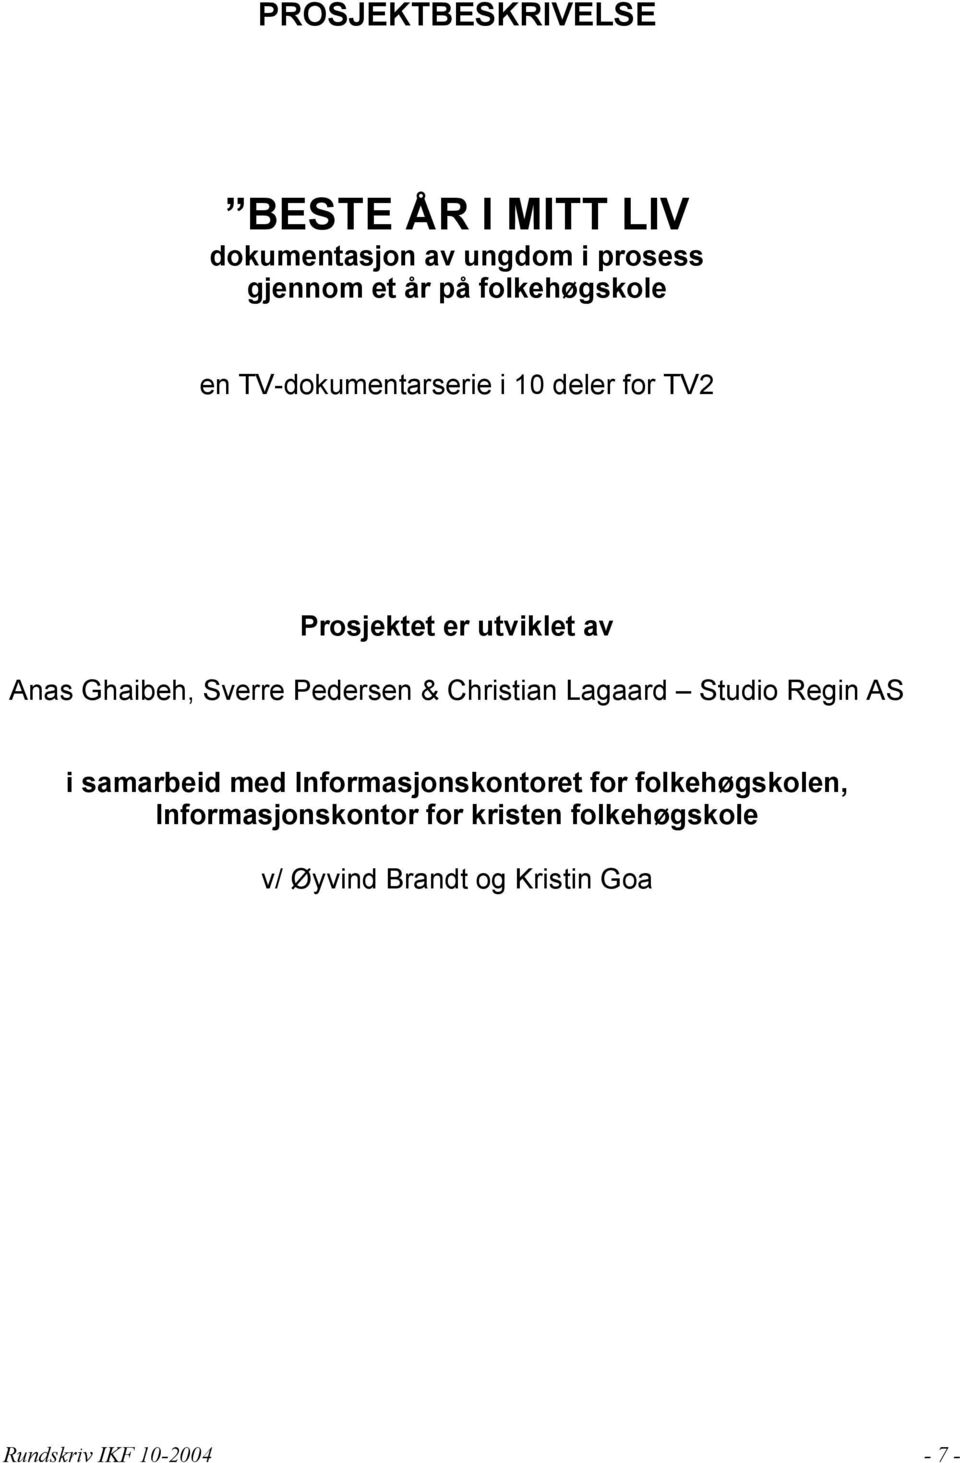 Sverre Pedersen & Christian Lagaard Studio Regin AS i samarbeid med Informasjonskontoret for